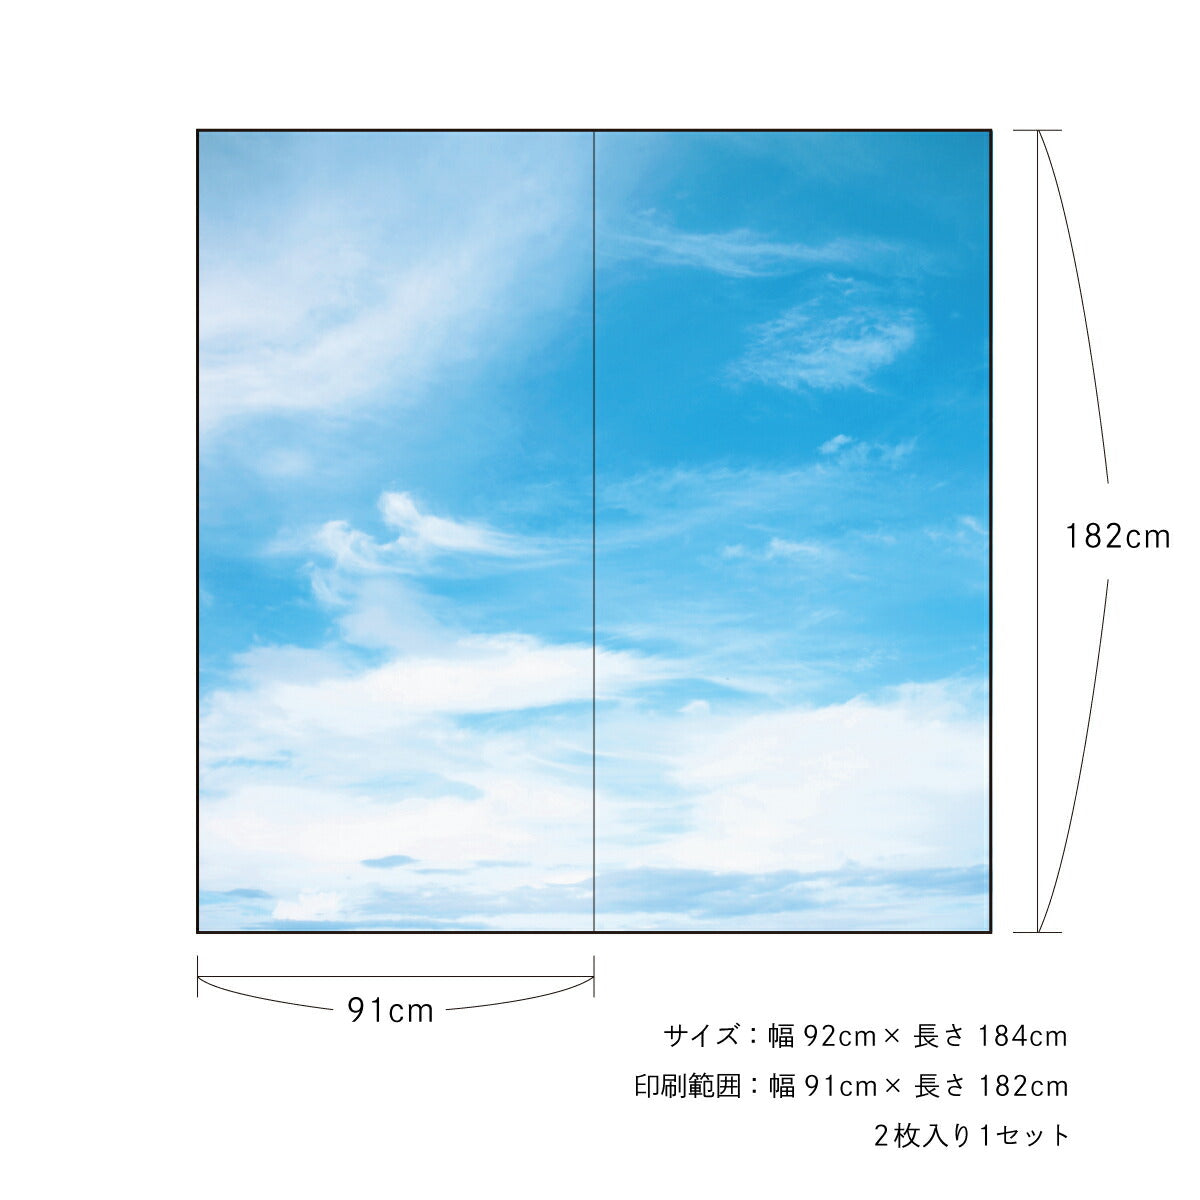 ふすま紙 空もよう襖紙 sky-02F Blue sky 91cm×182cm 2枚1組 水で貼るタイプ アサヒペン<br>おしゃれ 洋風 空 青空 柄 アート デザイン 再湿 ふすま<br>